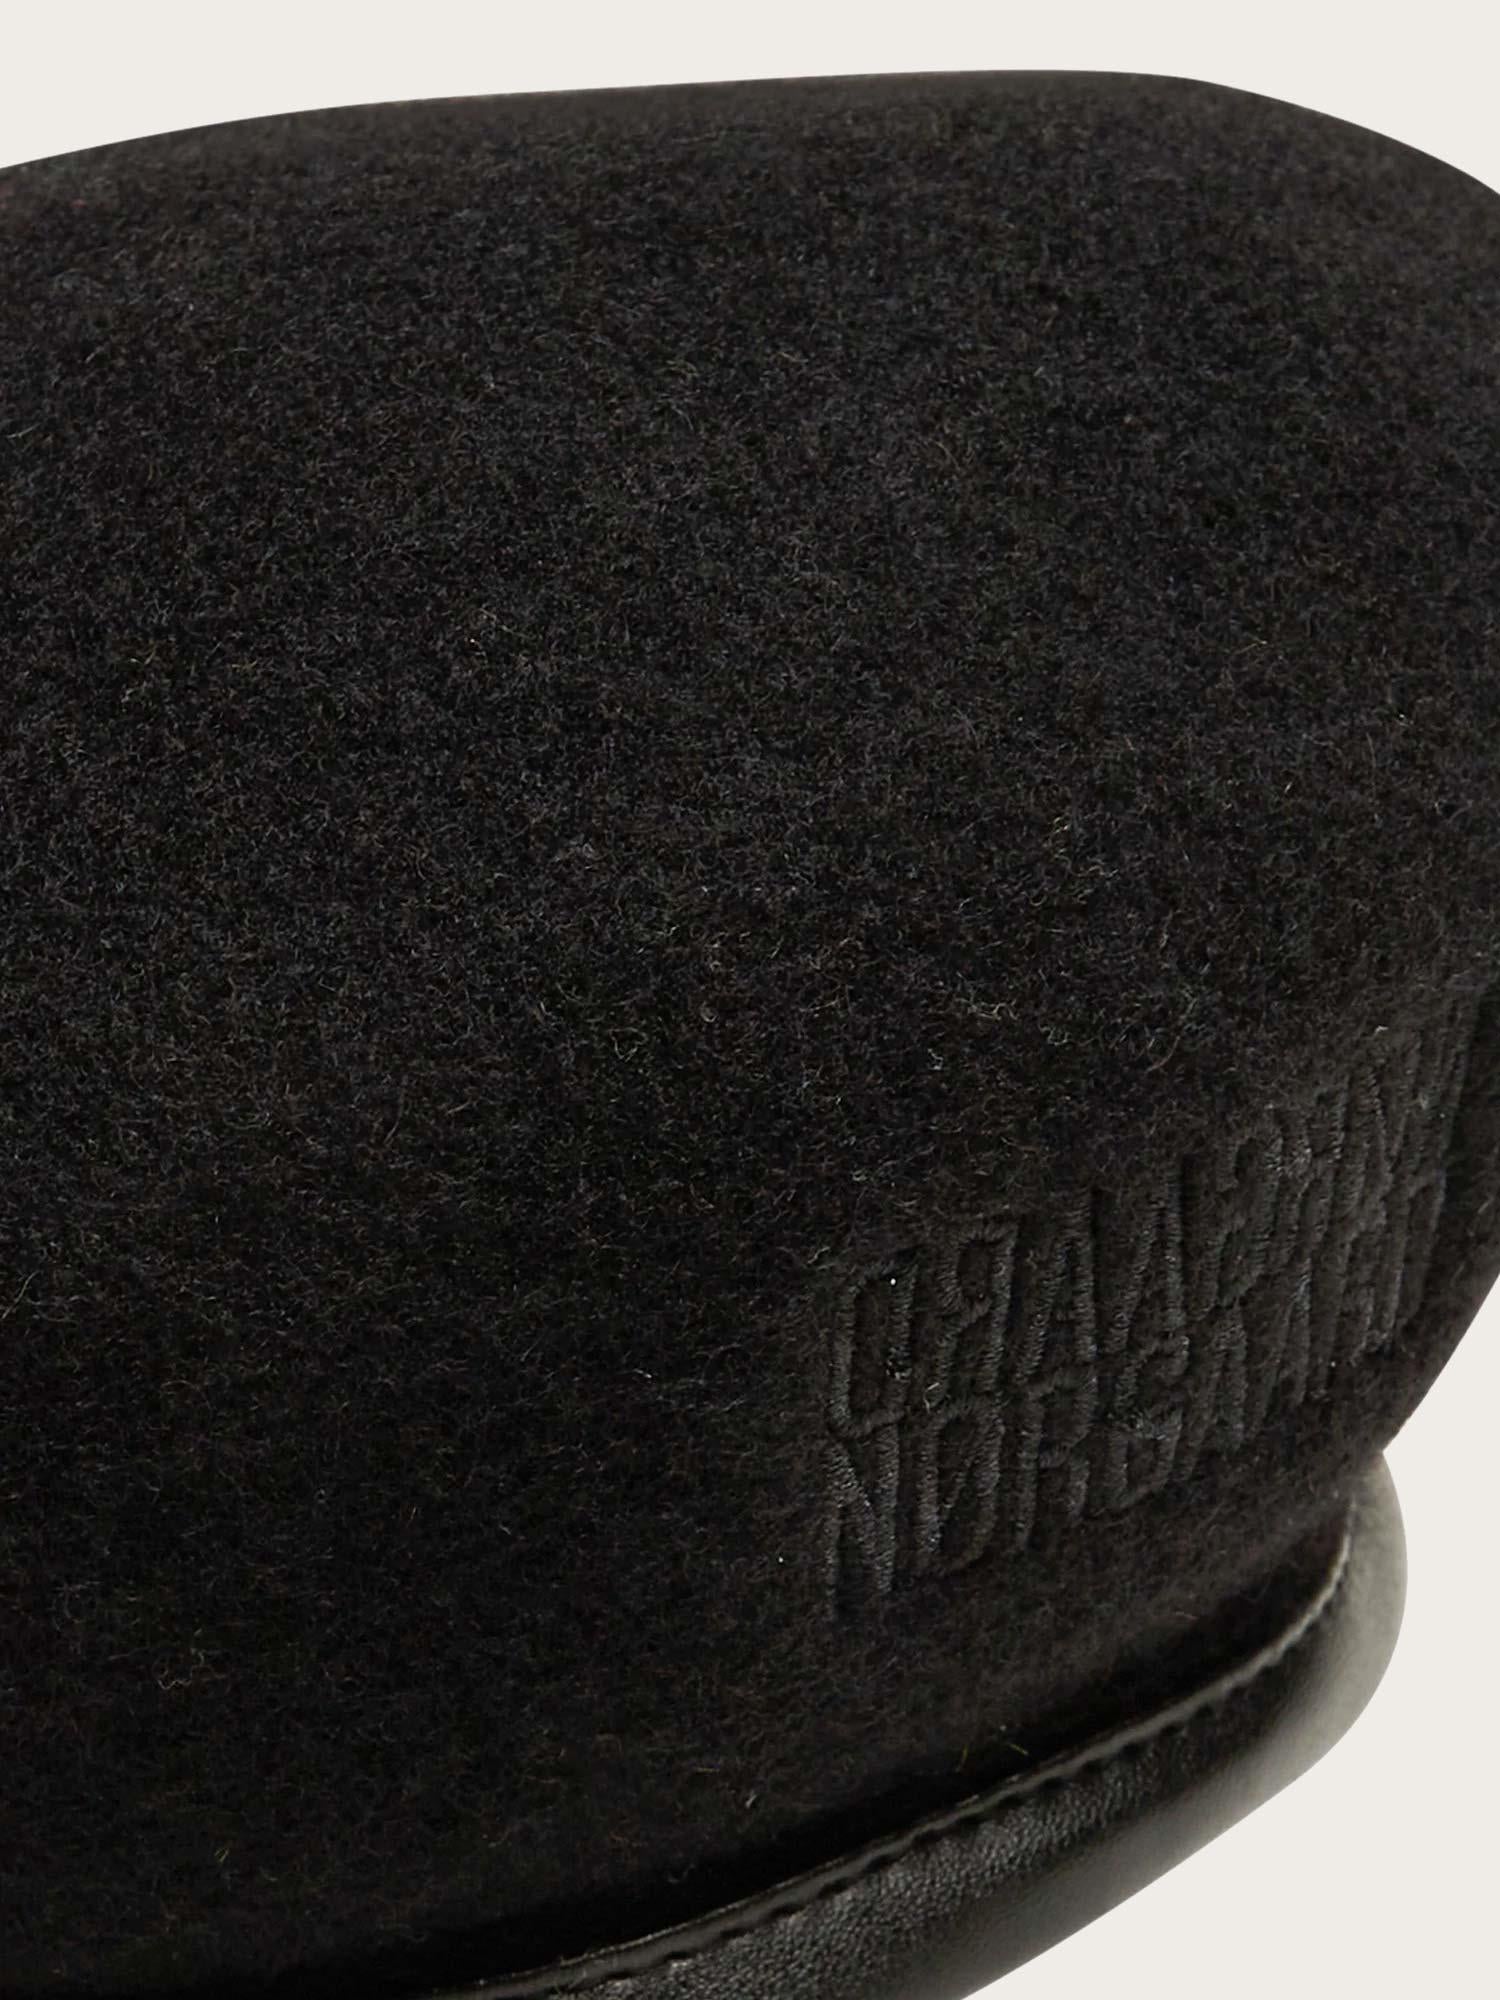 Panther Hitzacker Hat - Black